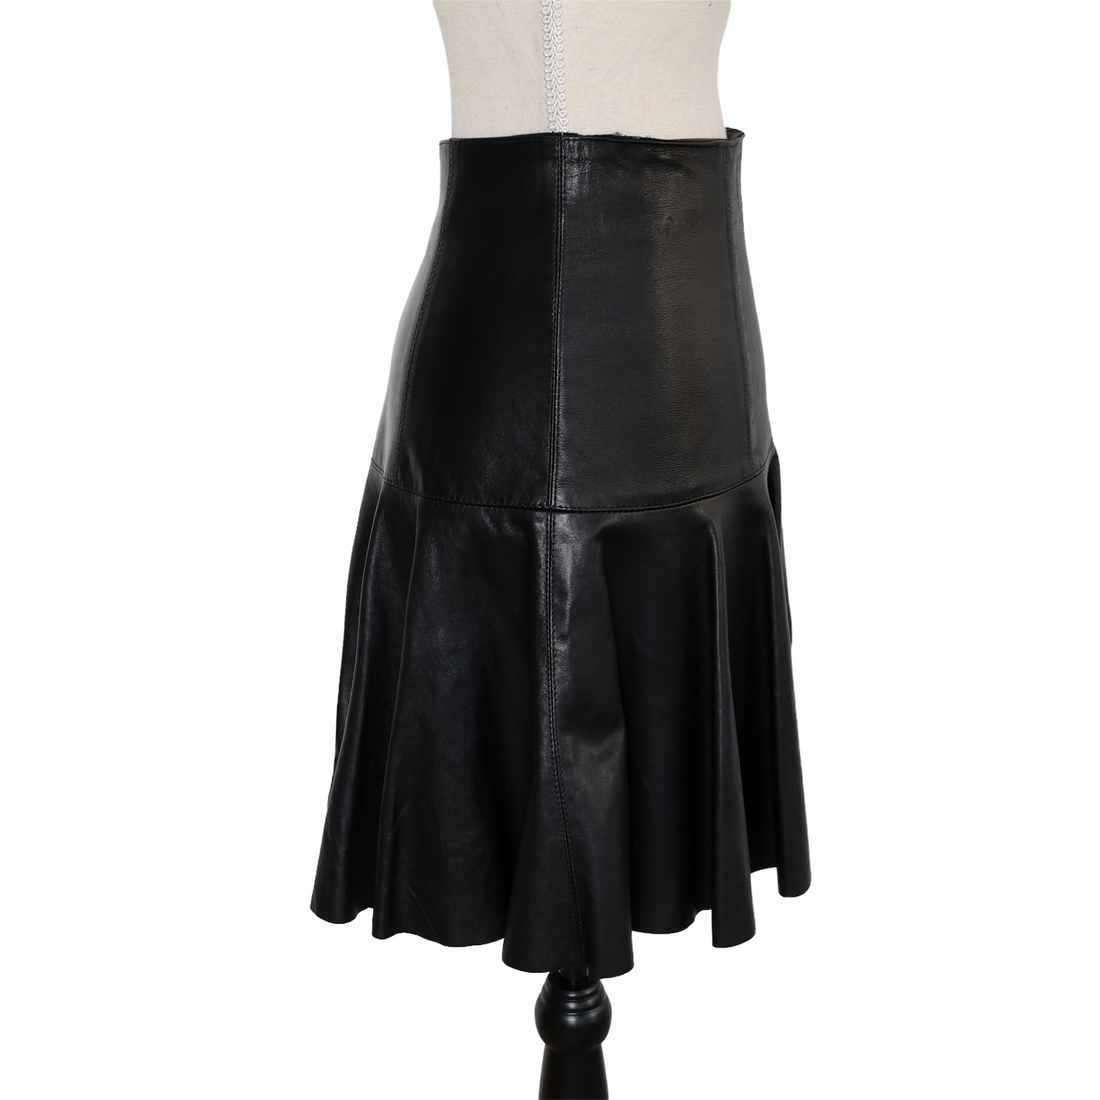 Plein Sud leather mini skirt